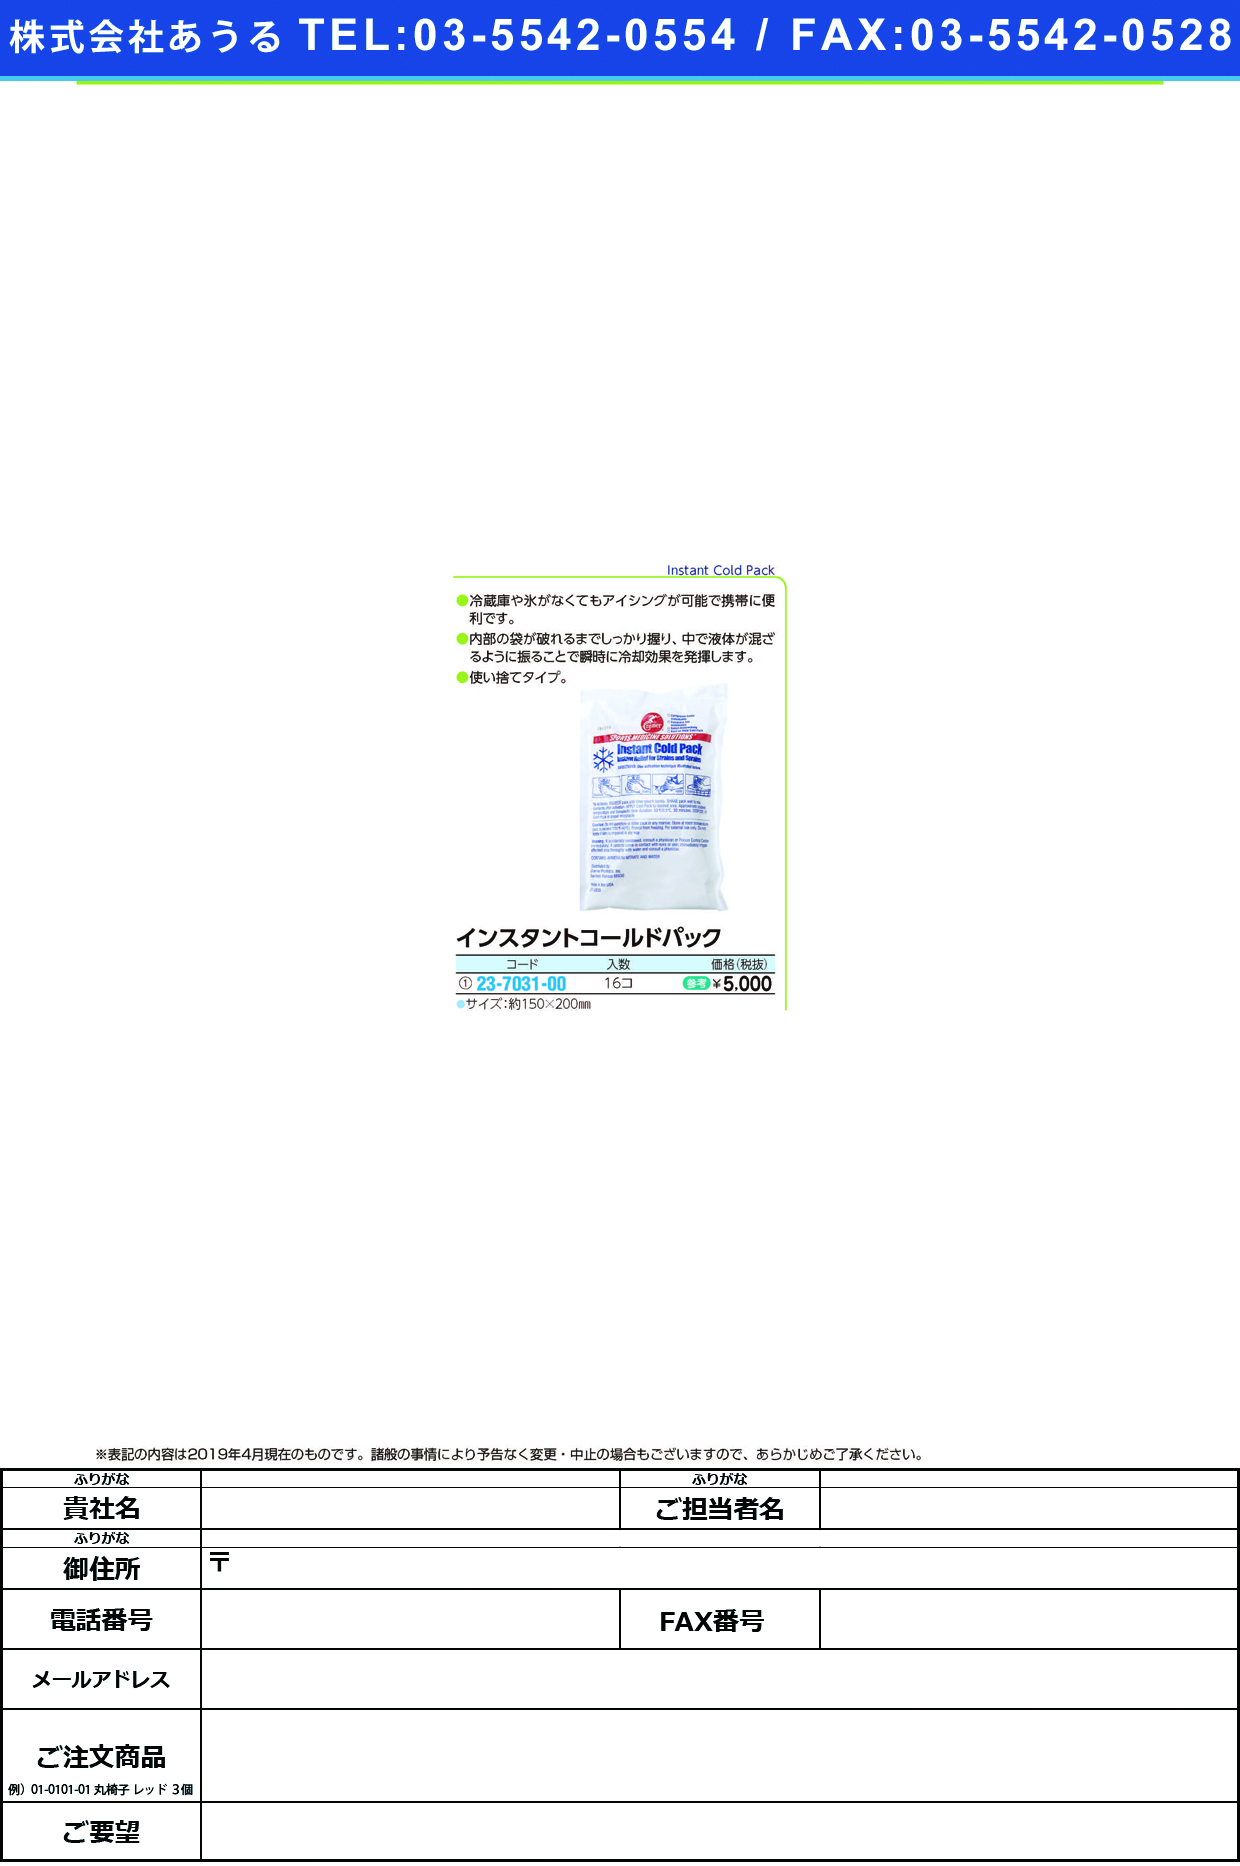 (23-7031-00)インスタントコールドパック 150X200MM(16ｺｲﾘ) ｲﾝｽﾀﾝﾄｺｰﾙﾄﾞﾊﾟｯｸ【1箱単位】【2019年カタログ商品】